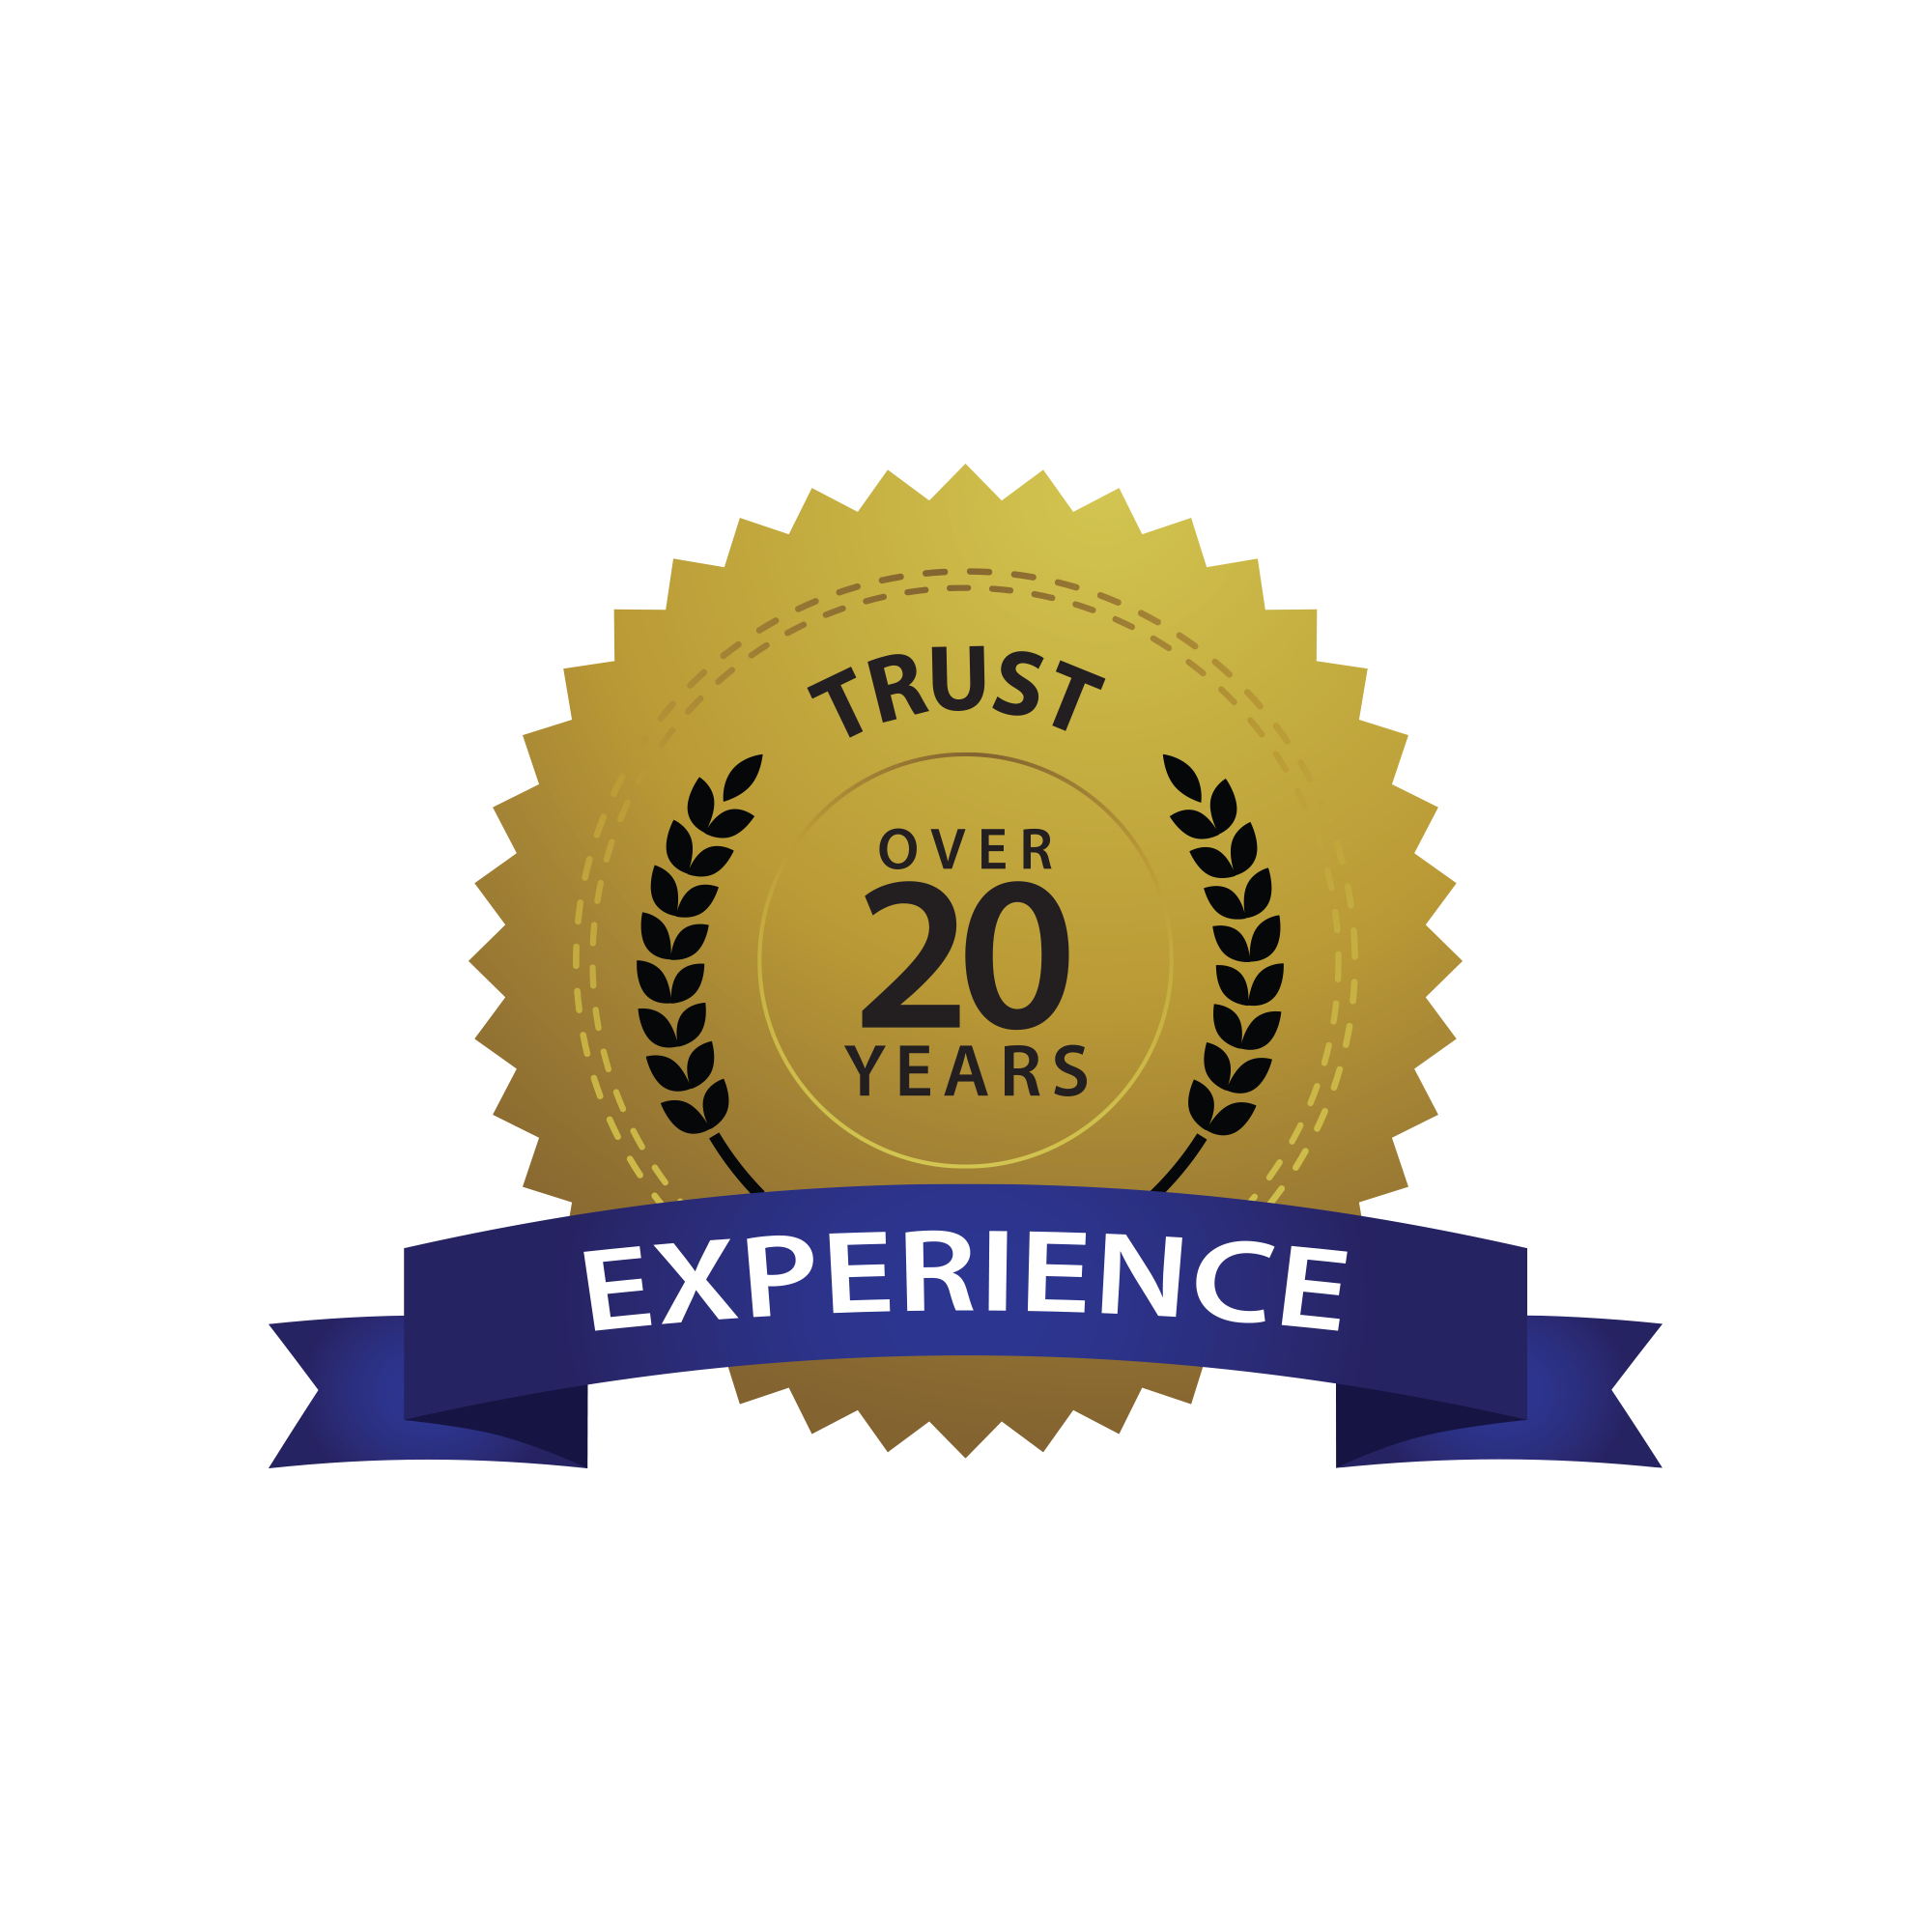 20 20 experience. Years of experience. 10 Years of experience. 5 Years experience. Years of experience icon.